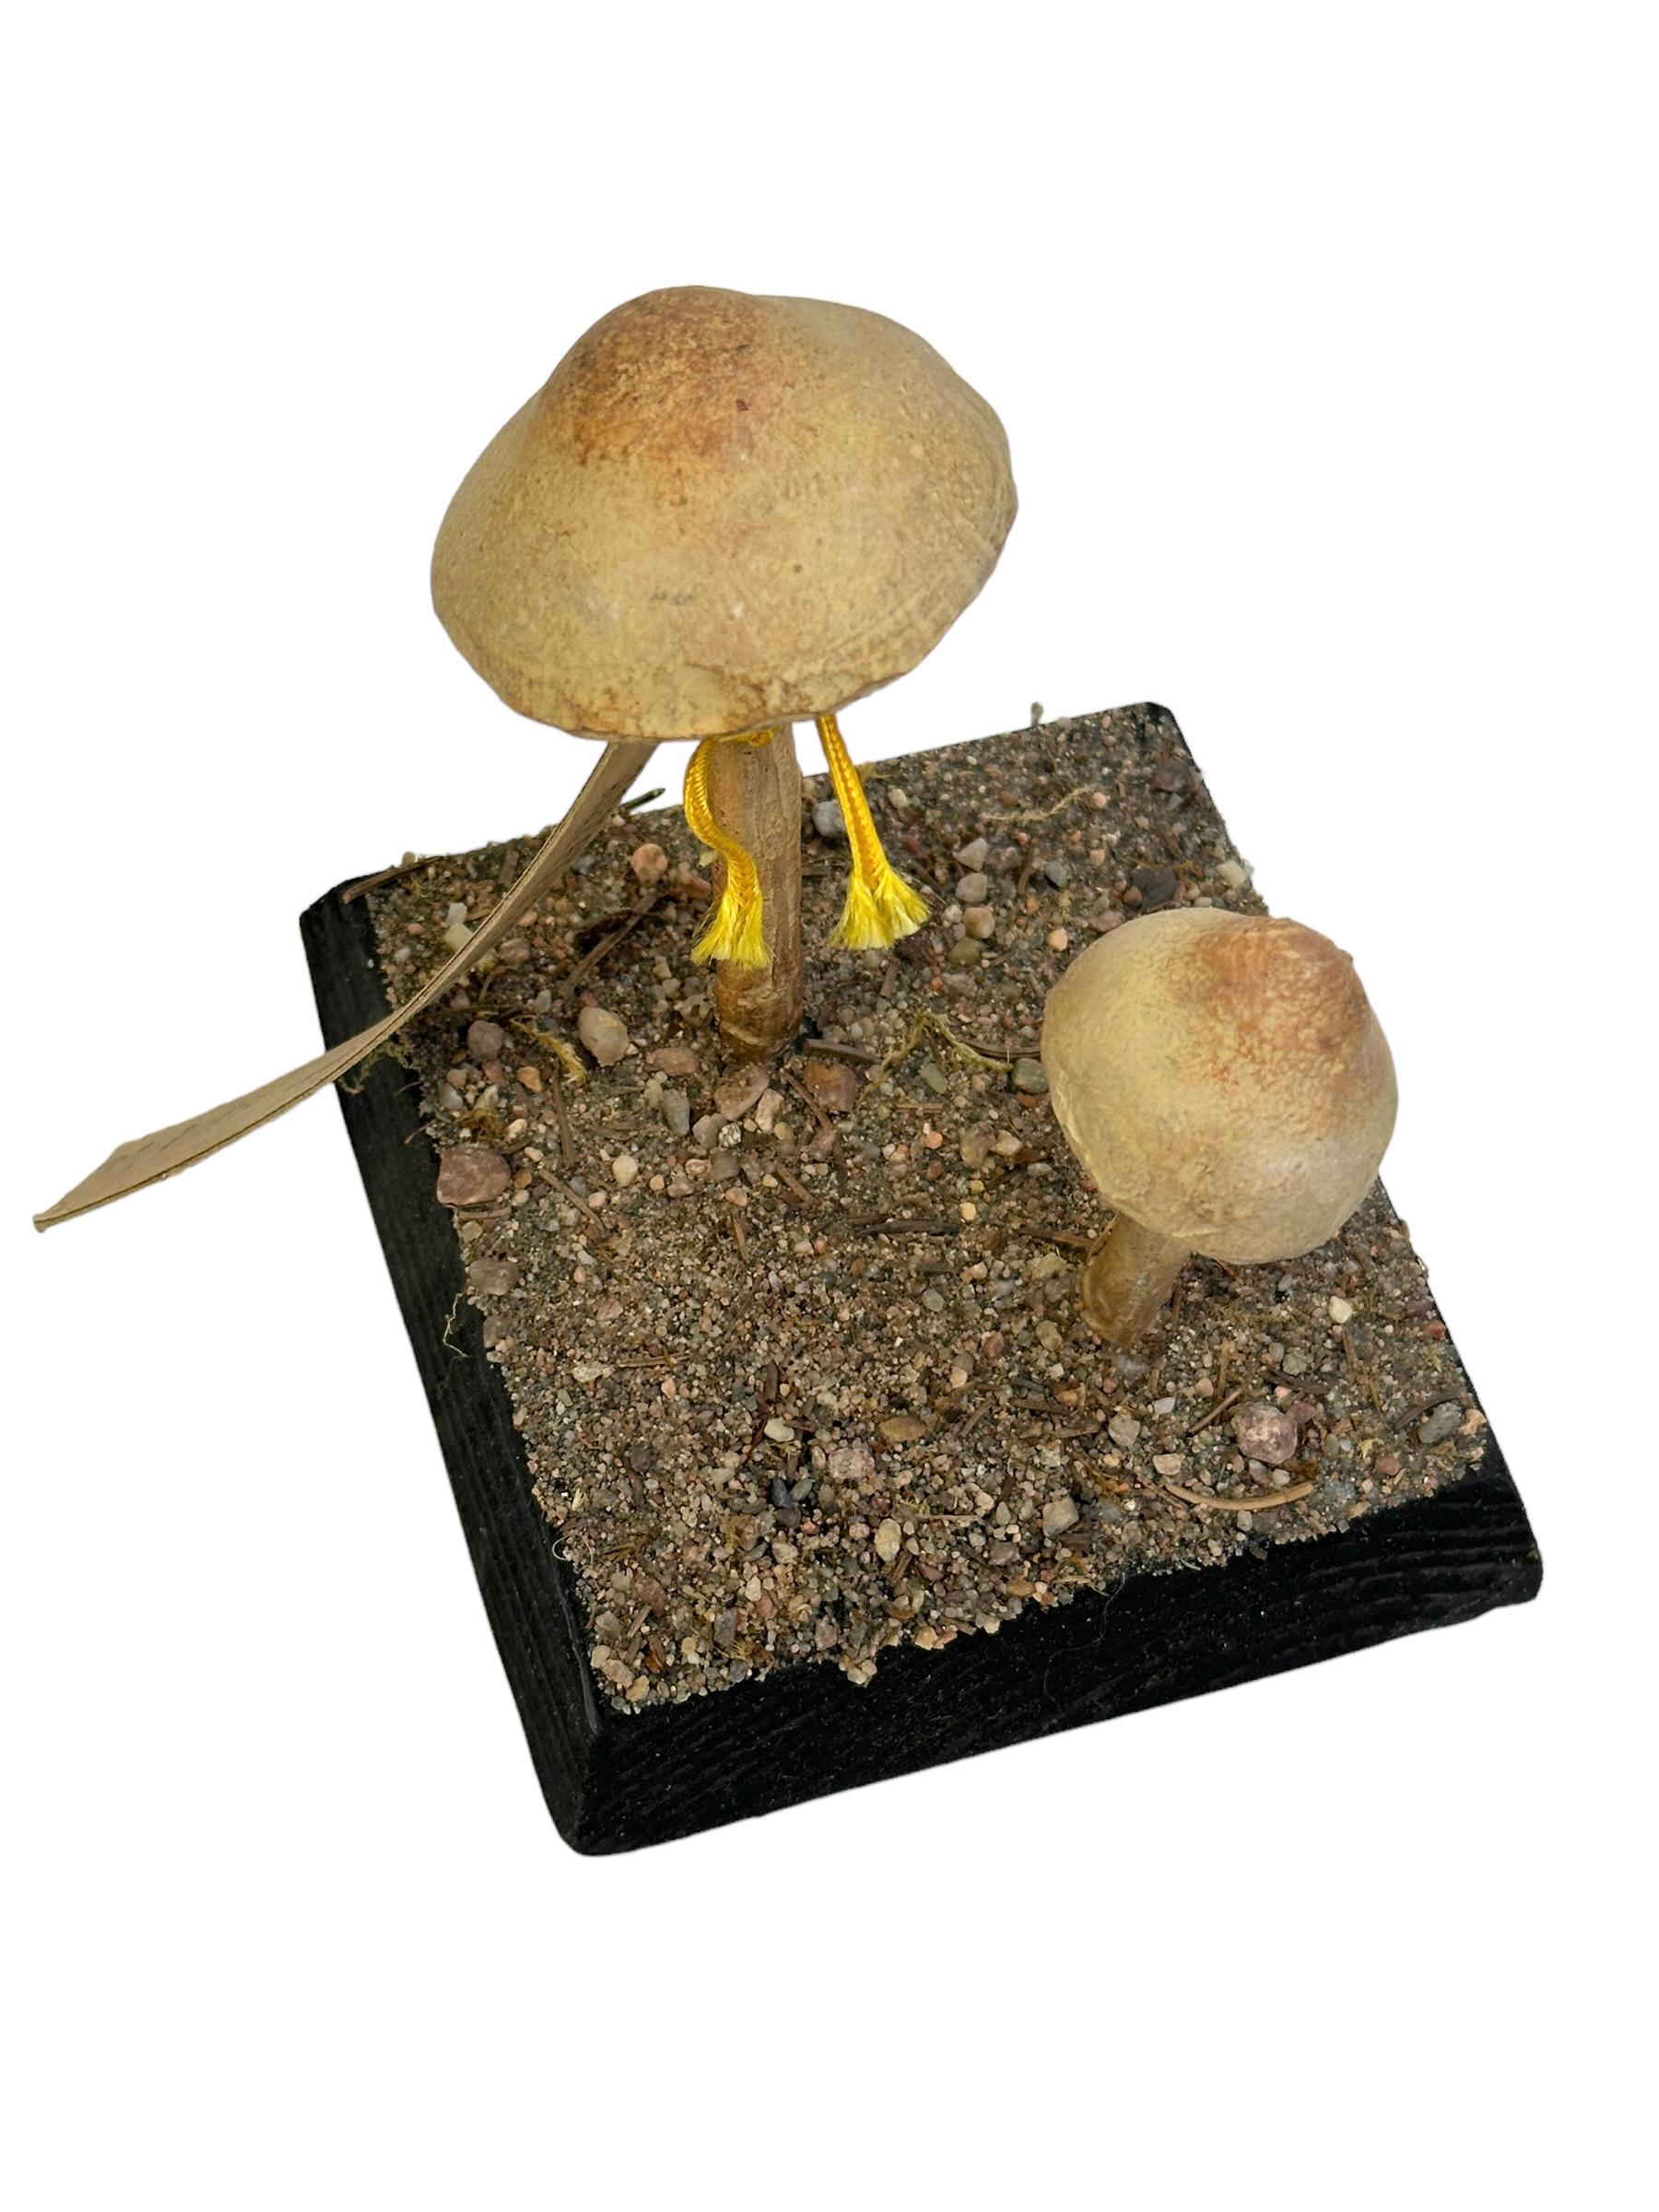 Hand-Crafted Mushroom Botanical Scientific Specimen Model Europe,  1950s or older For Sale